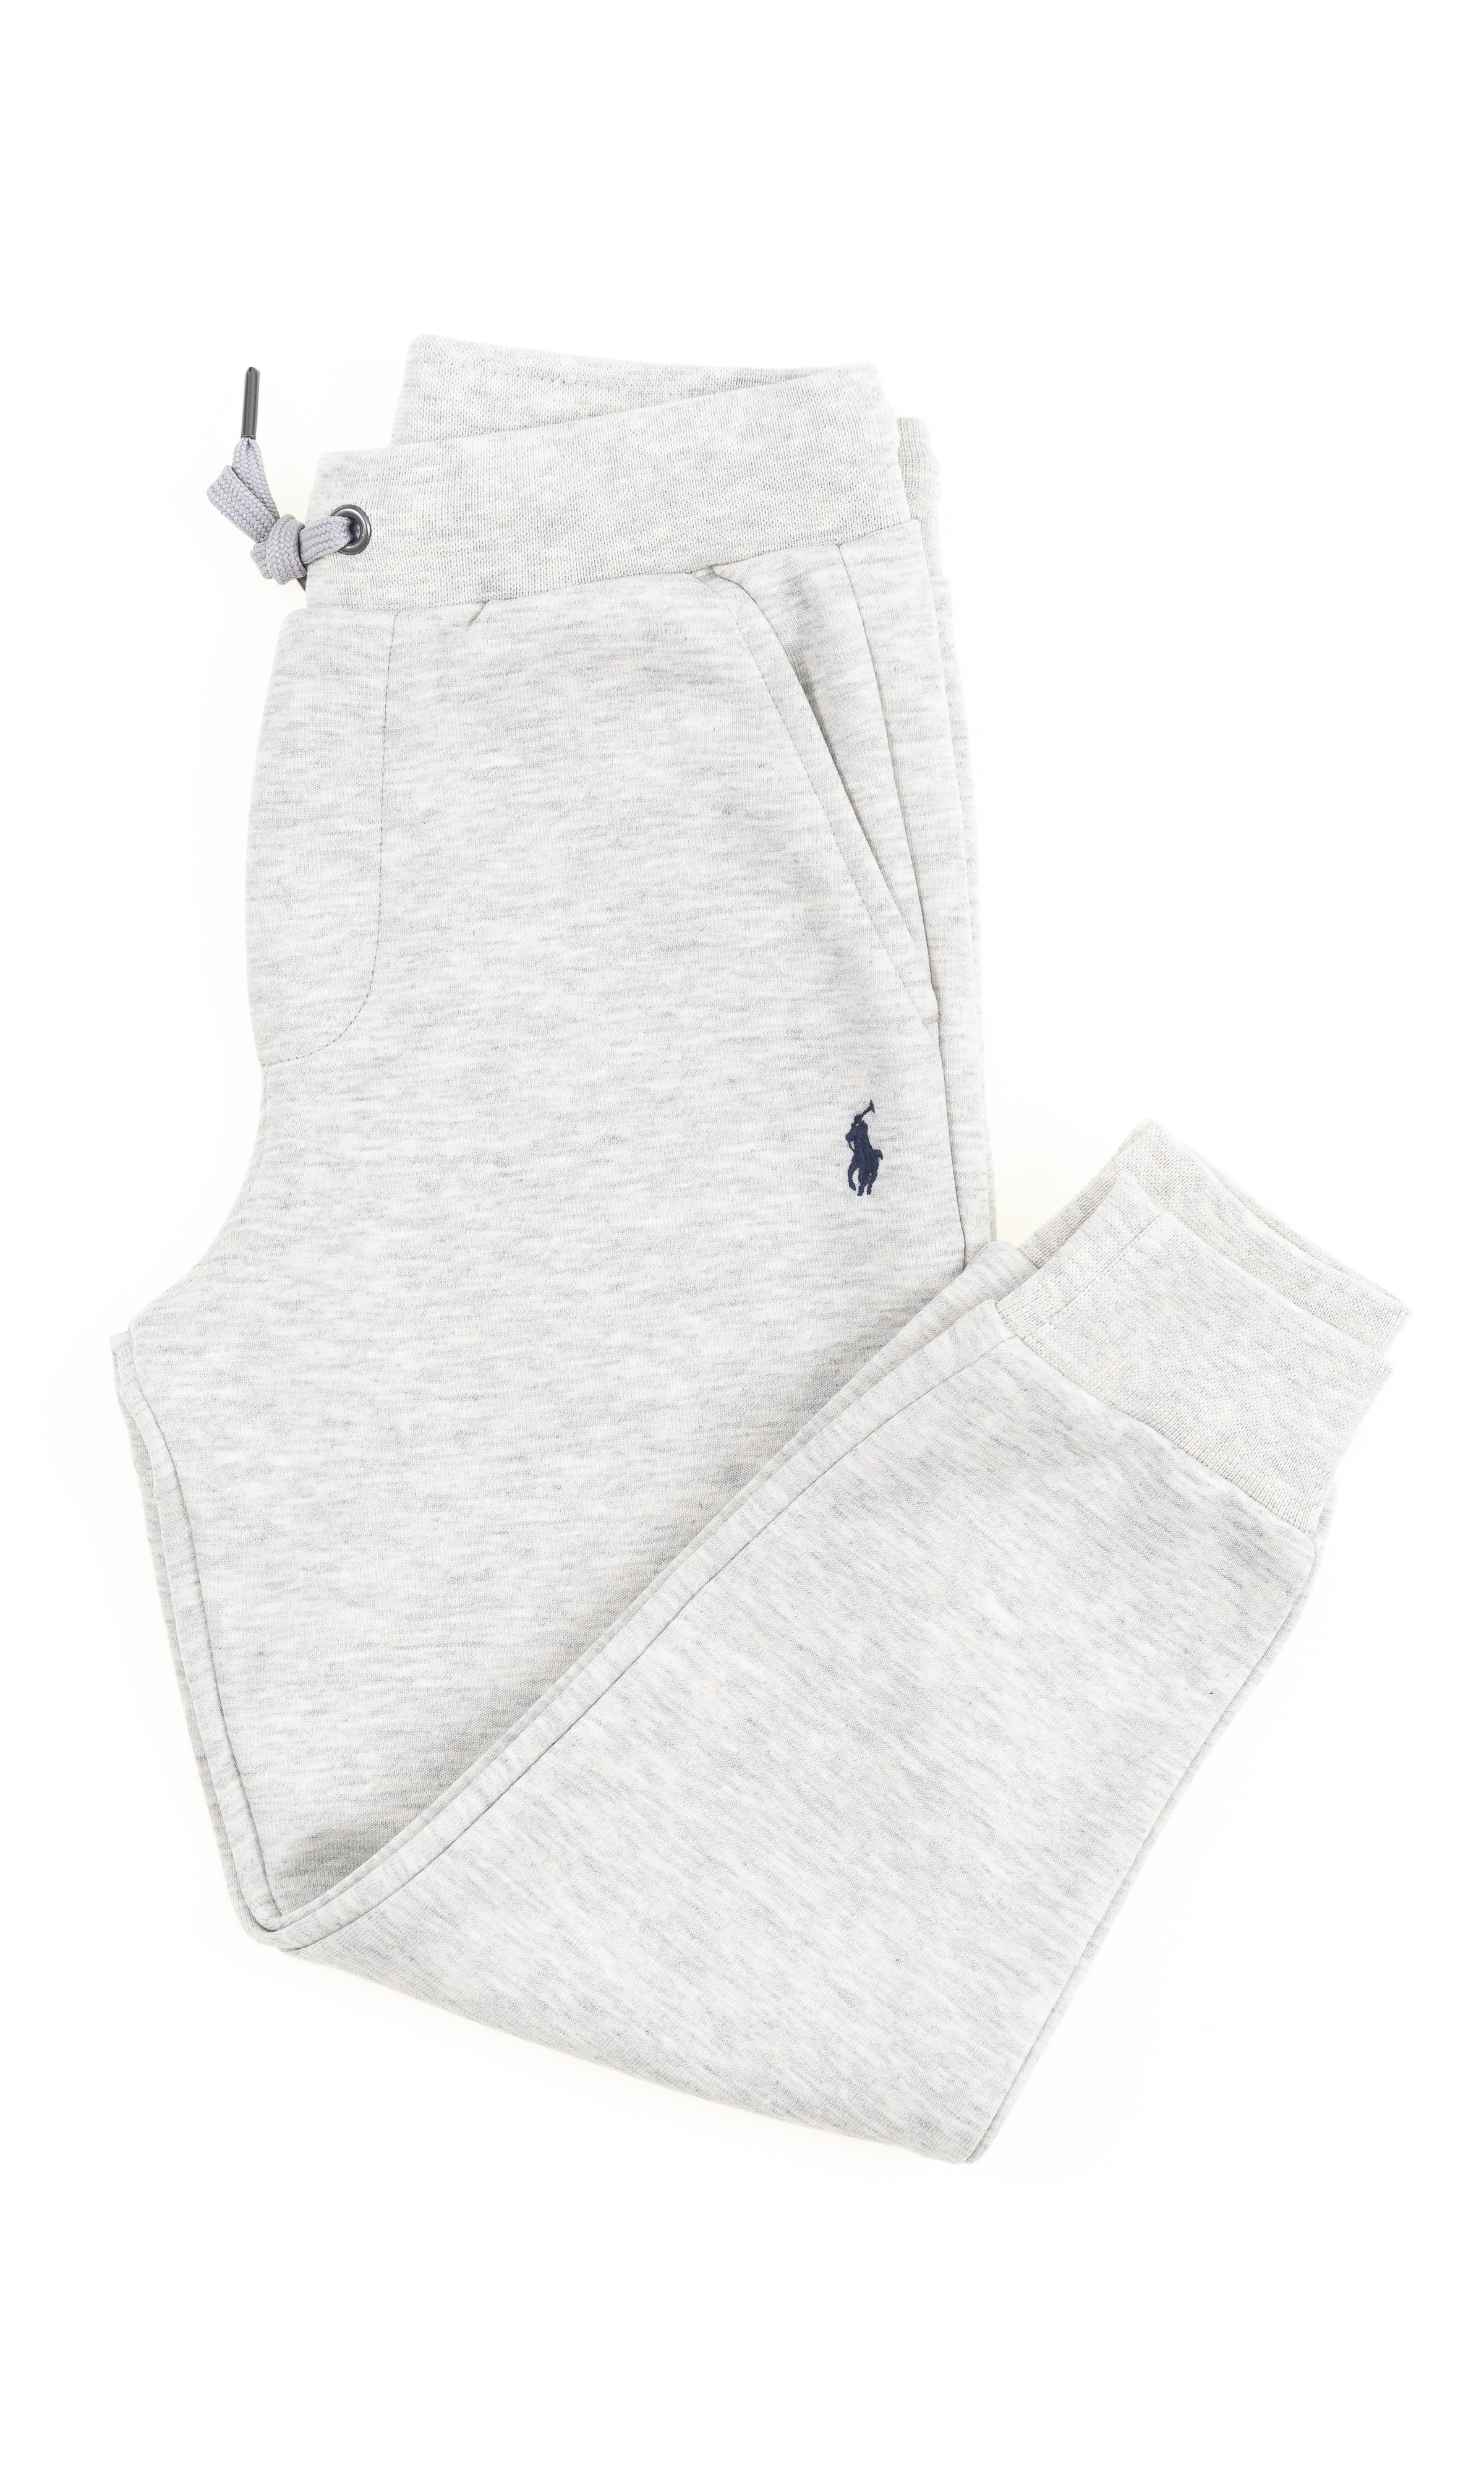 Grey sweatpants, Polo Ralph Lauren 